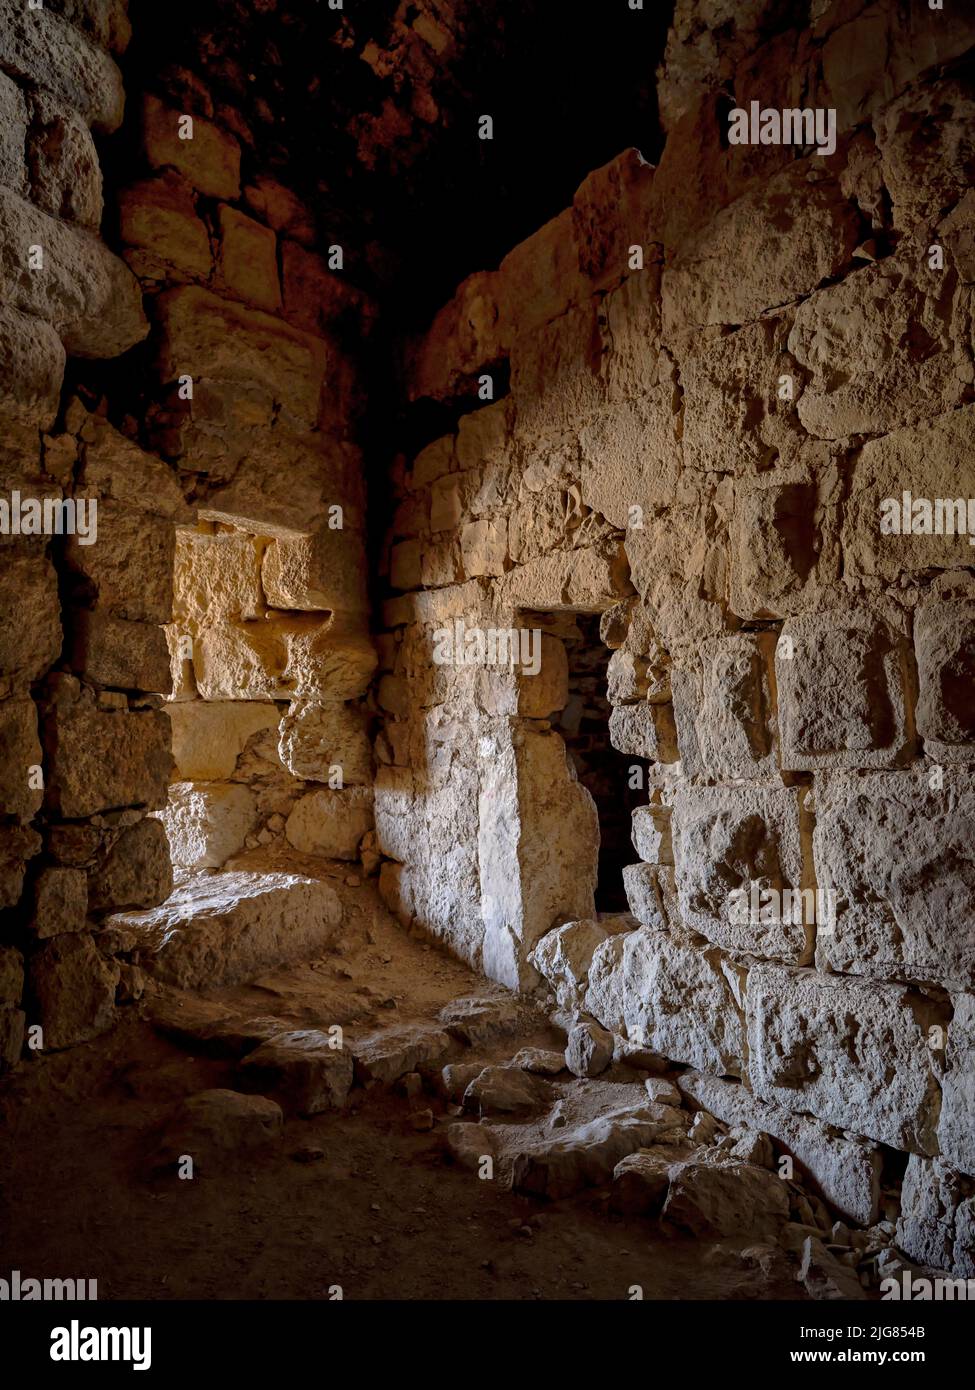 Nel castello crociato Kerak, Giordania. Foto Stock